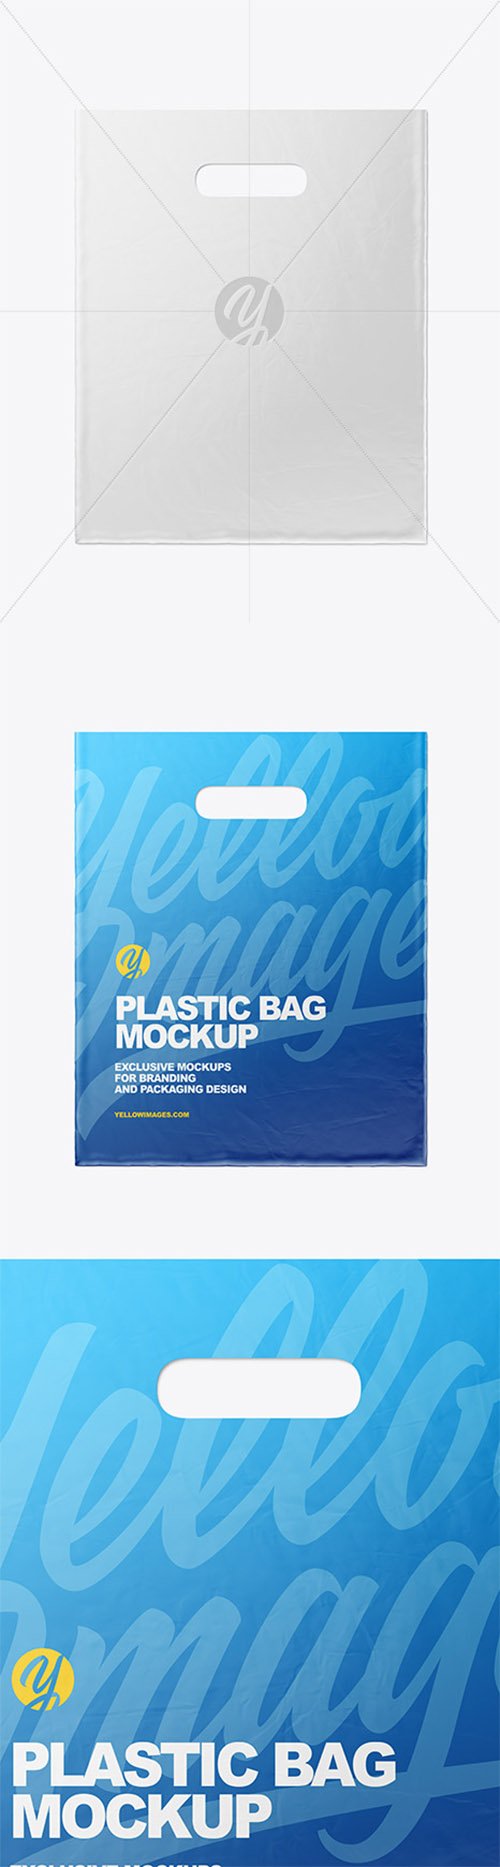 Plastic Carrier Bag Mockup 80480 TIF